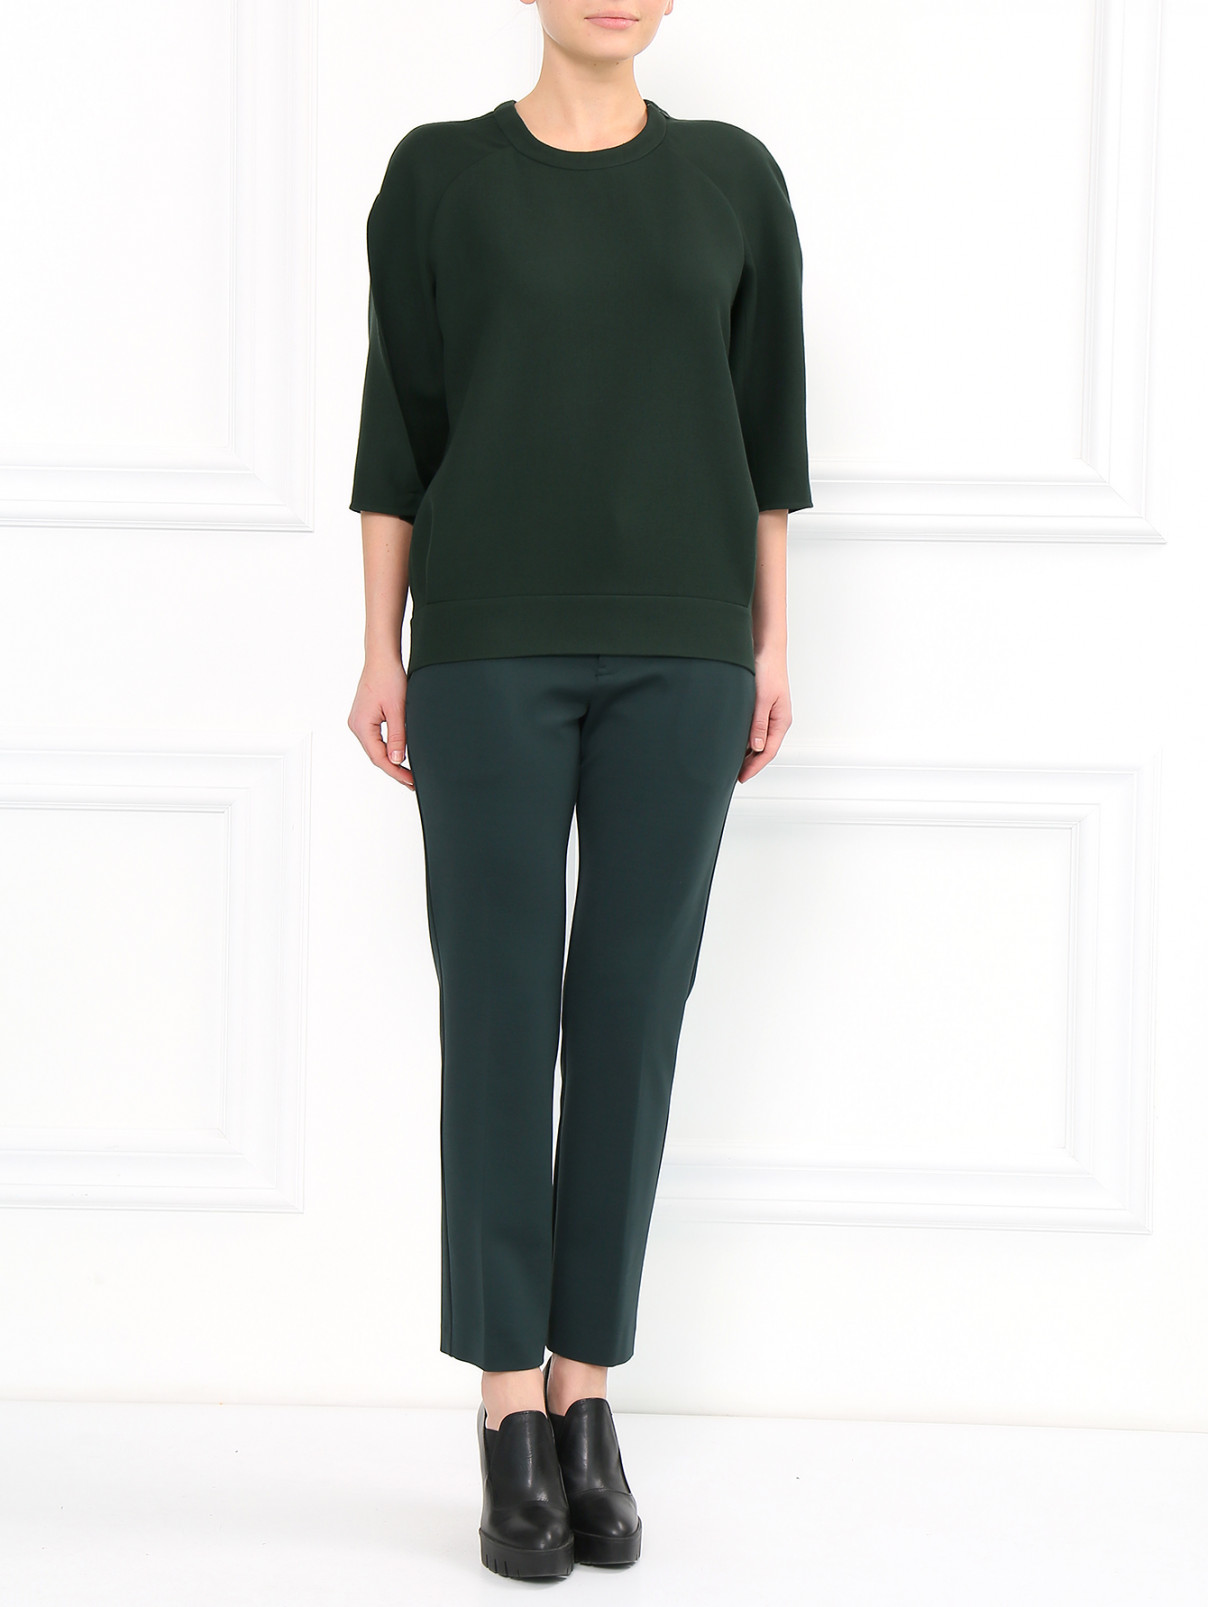 Узкие эластичные брюки с высокой посадкой и боковыми карманами Jil Sander  –  Модель Общий вид  – Цвет:  Зеленый